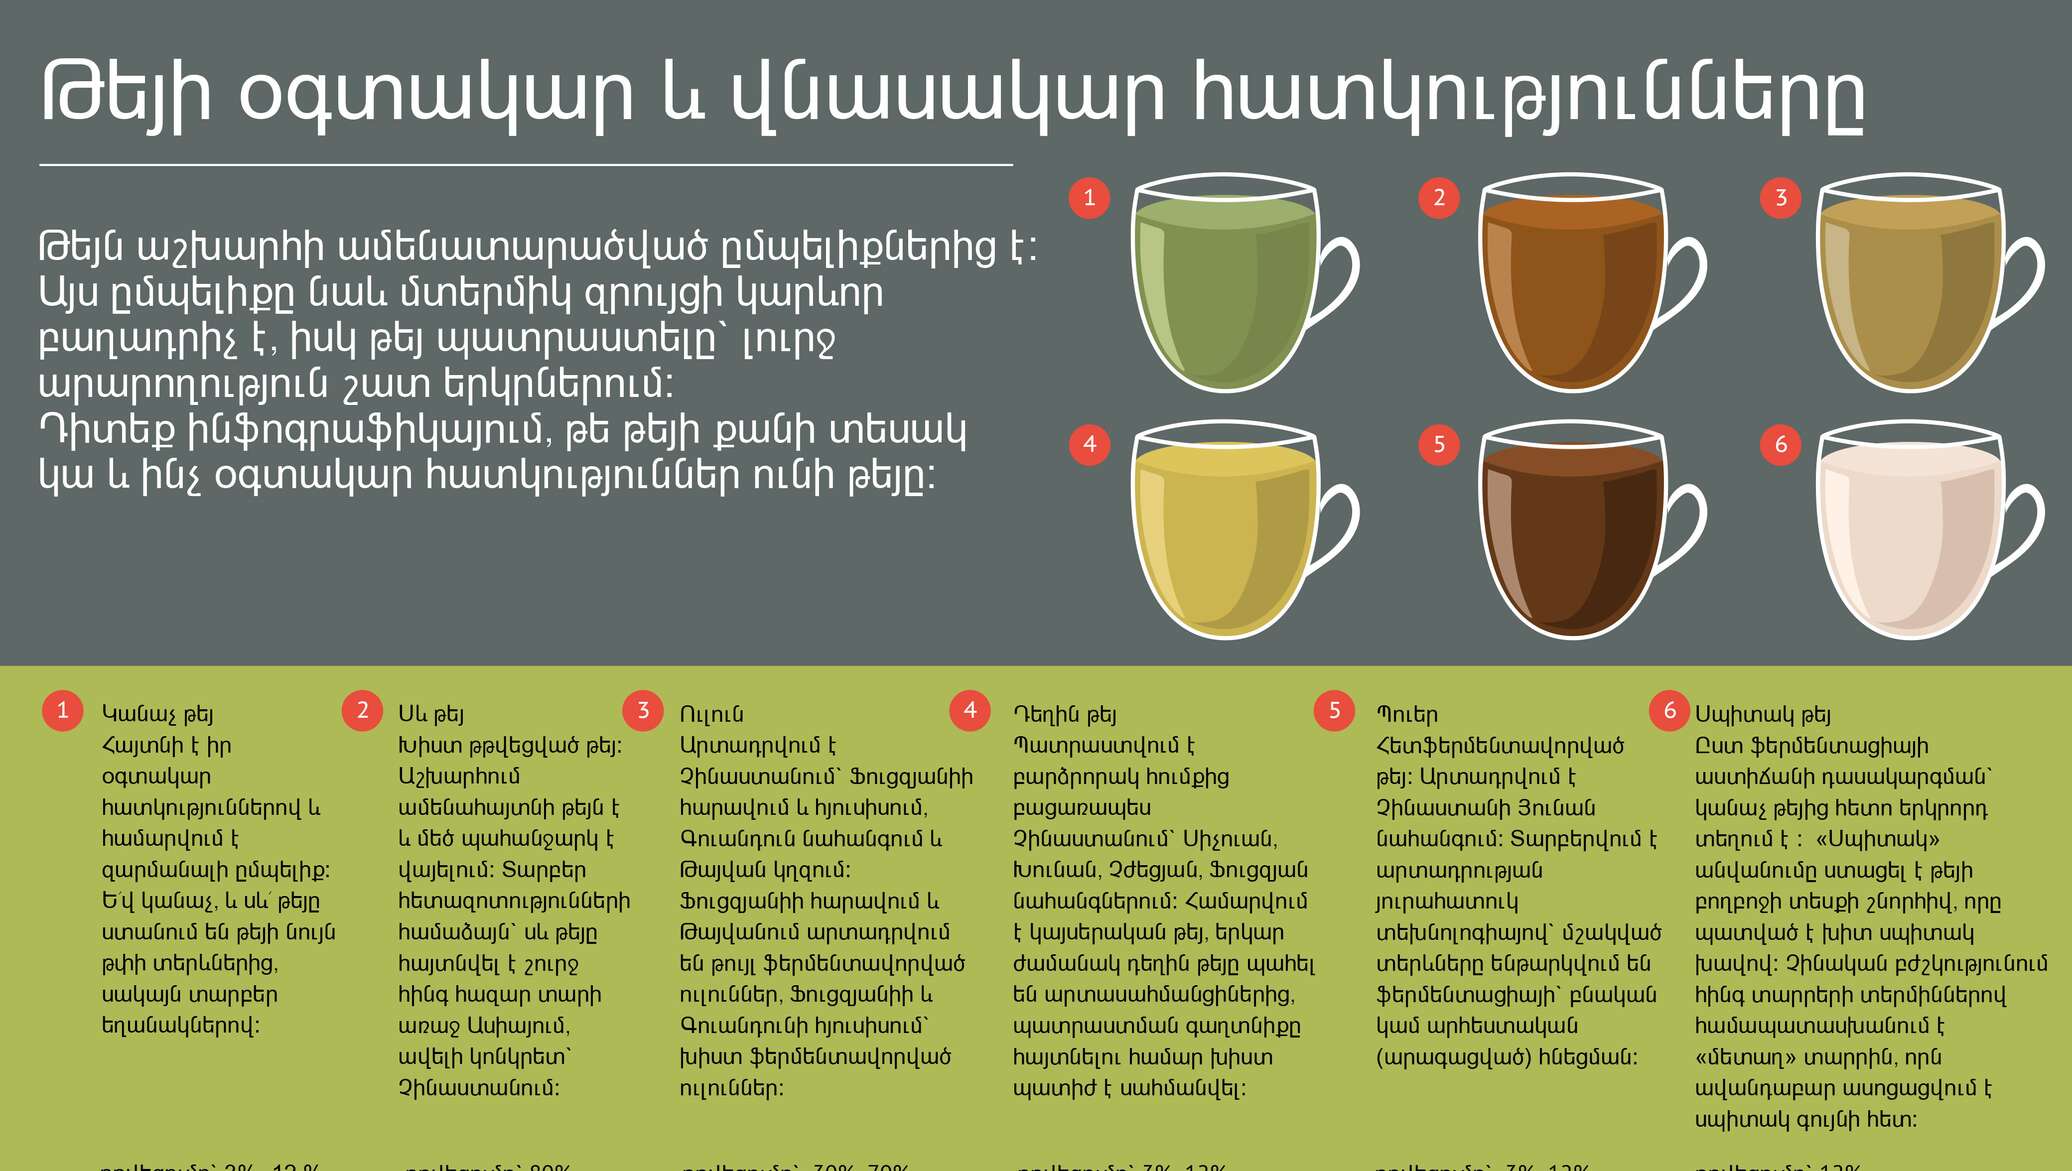 Что можно принять кроме. Разновидности чая. Инфографика чай. Инфографика заварка чая. Виды заваривания чая.